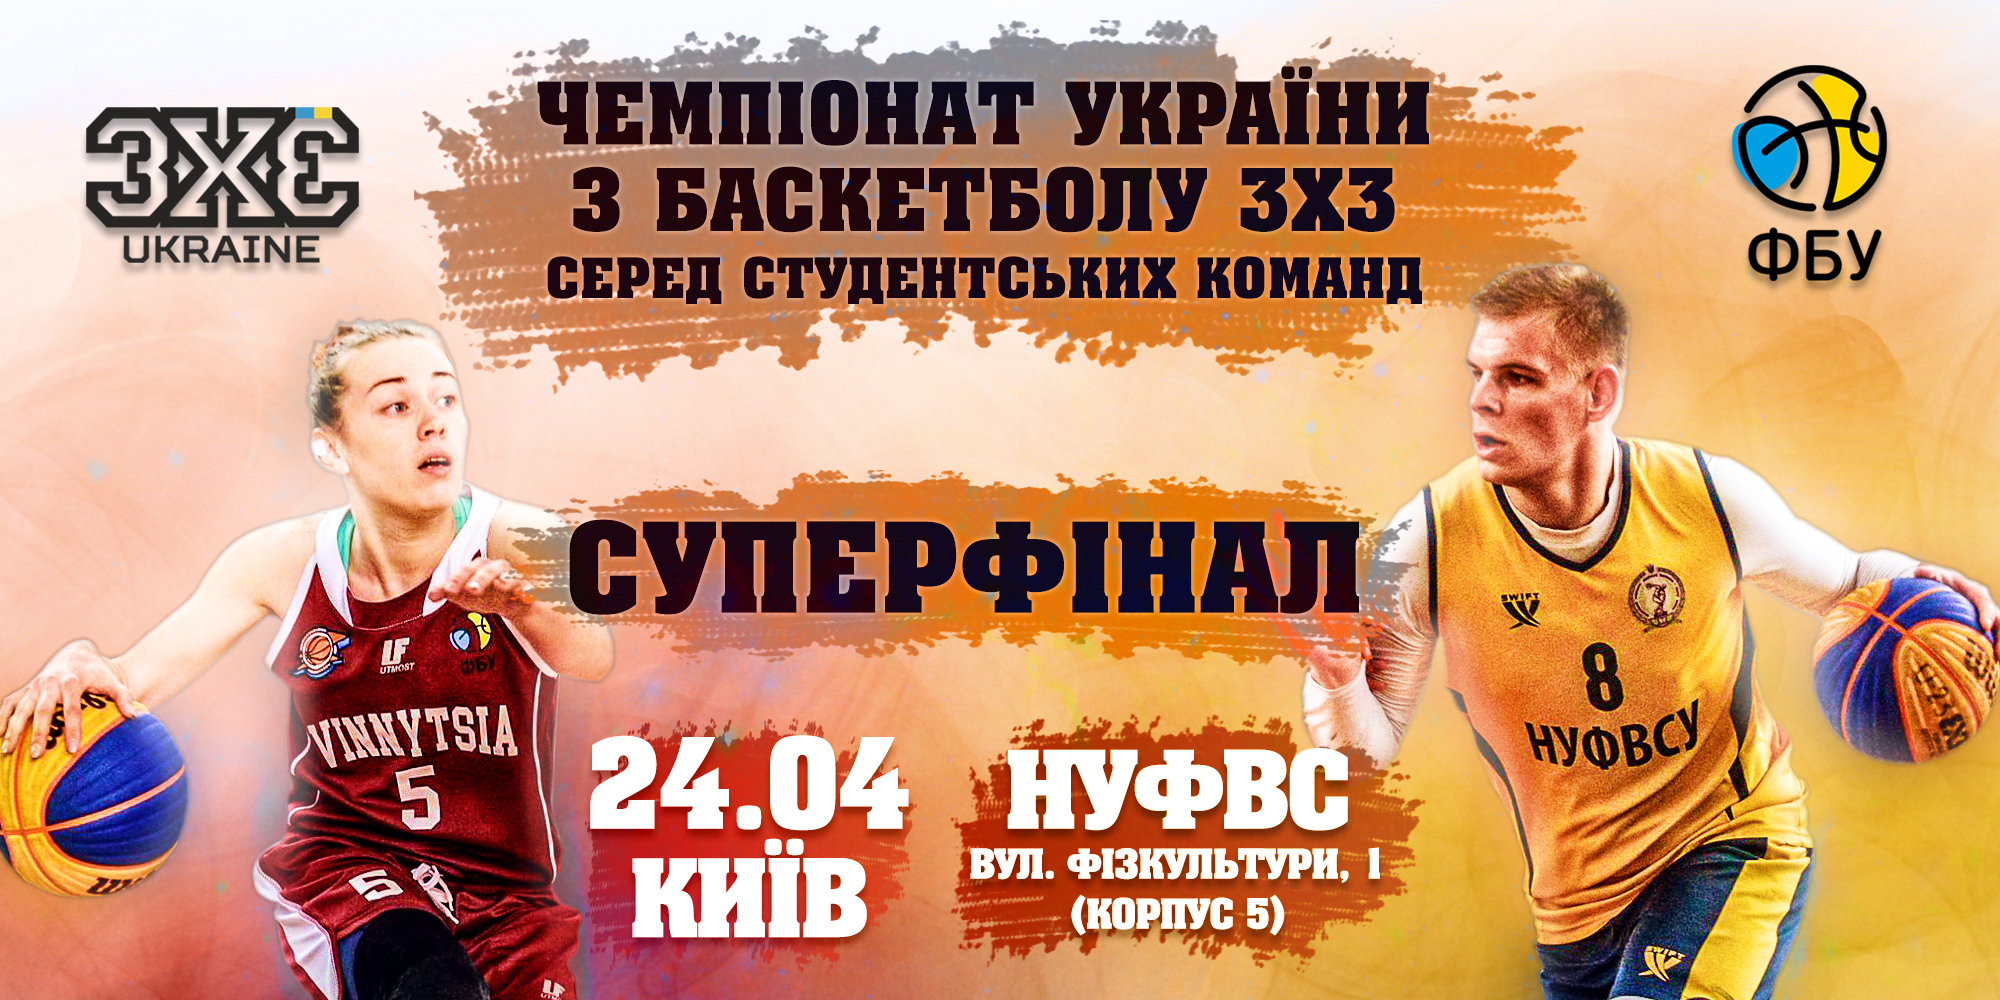 Онлайн-відеотрансляція фінального етапу студентського чемпіонату України з баскетболу 3х3